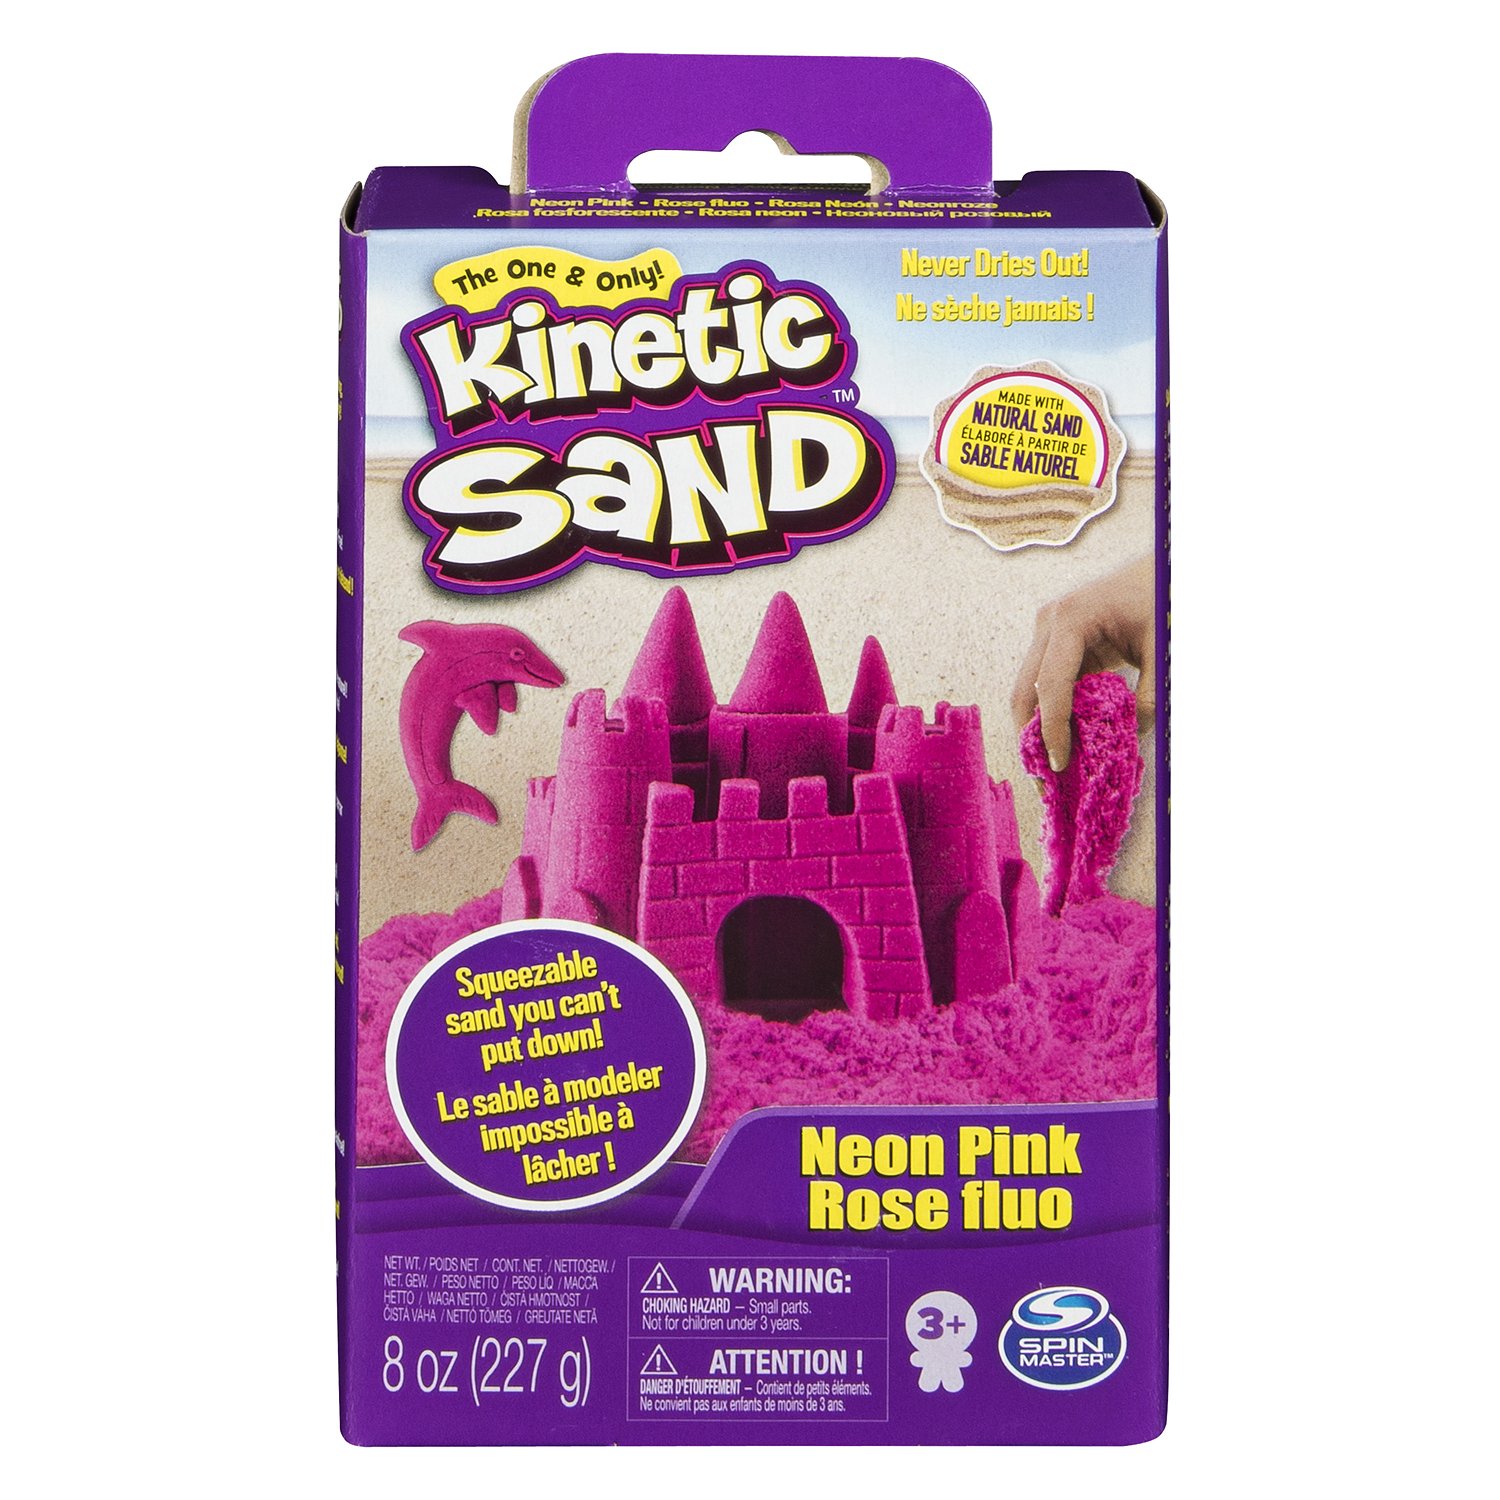 Песок кинетический Kinetic Sand 227г Pink 6033332/20080706